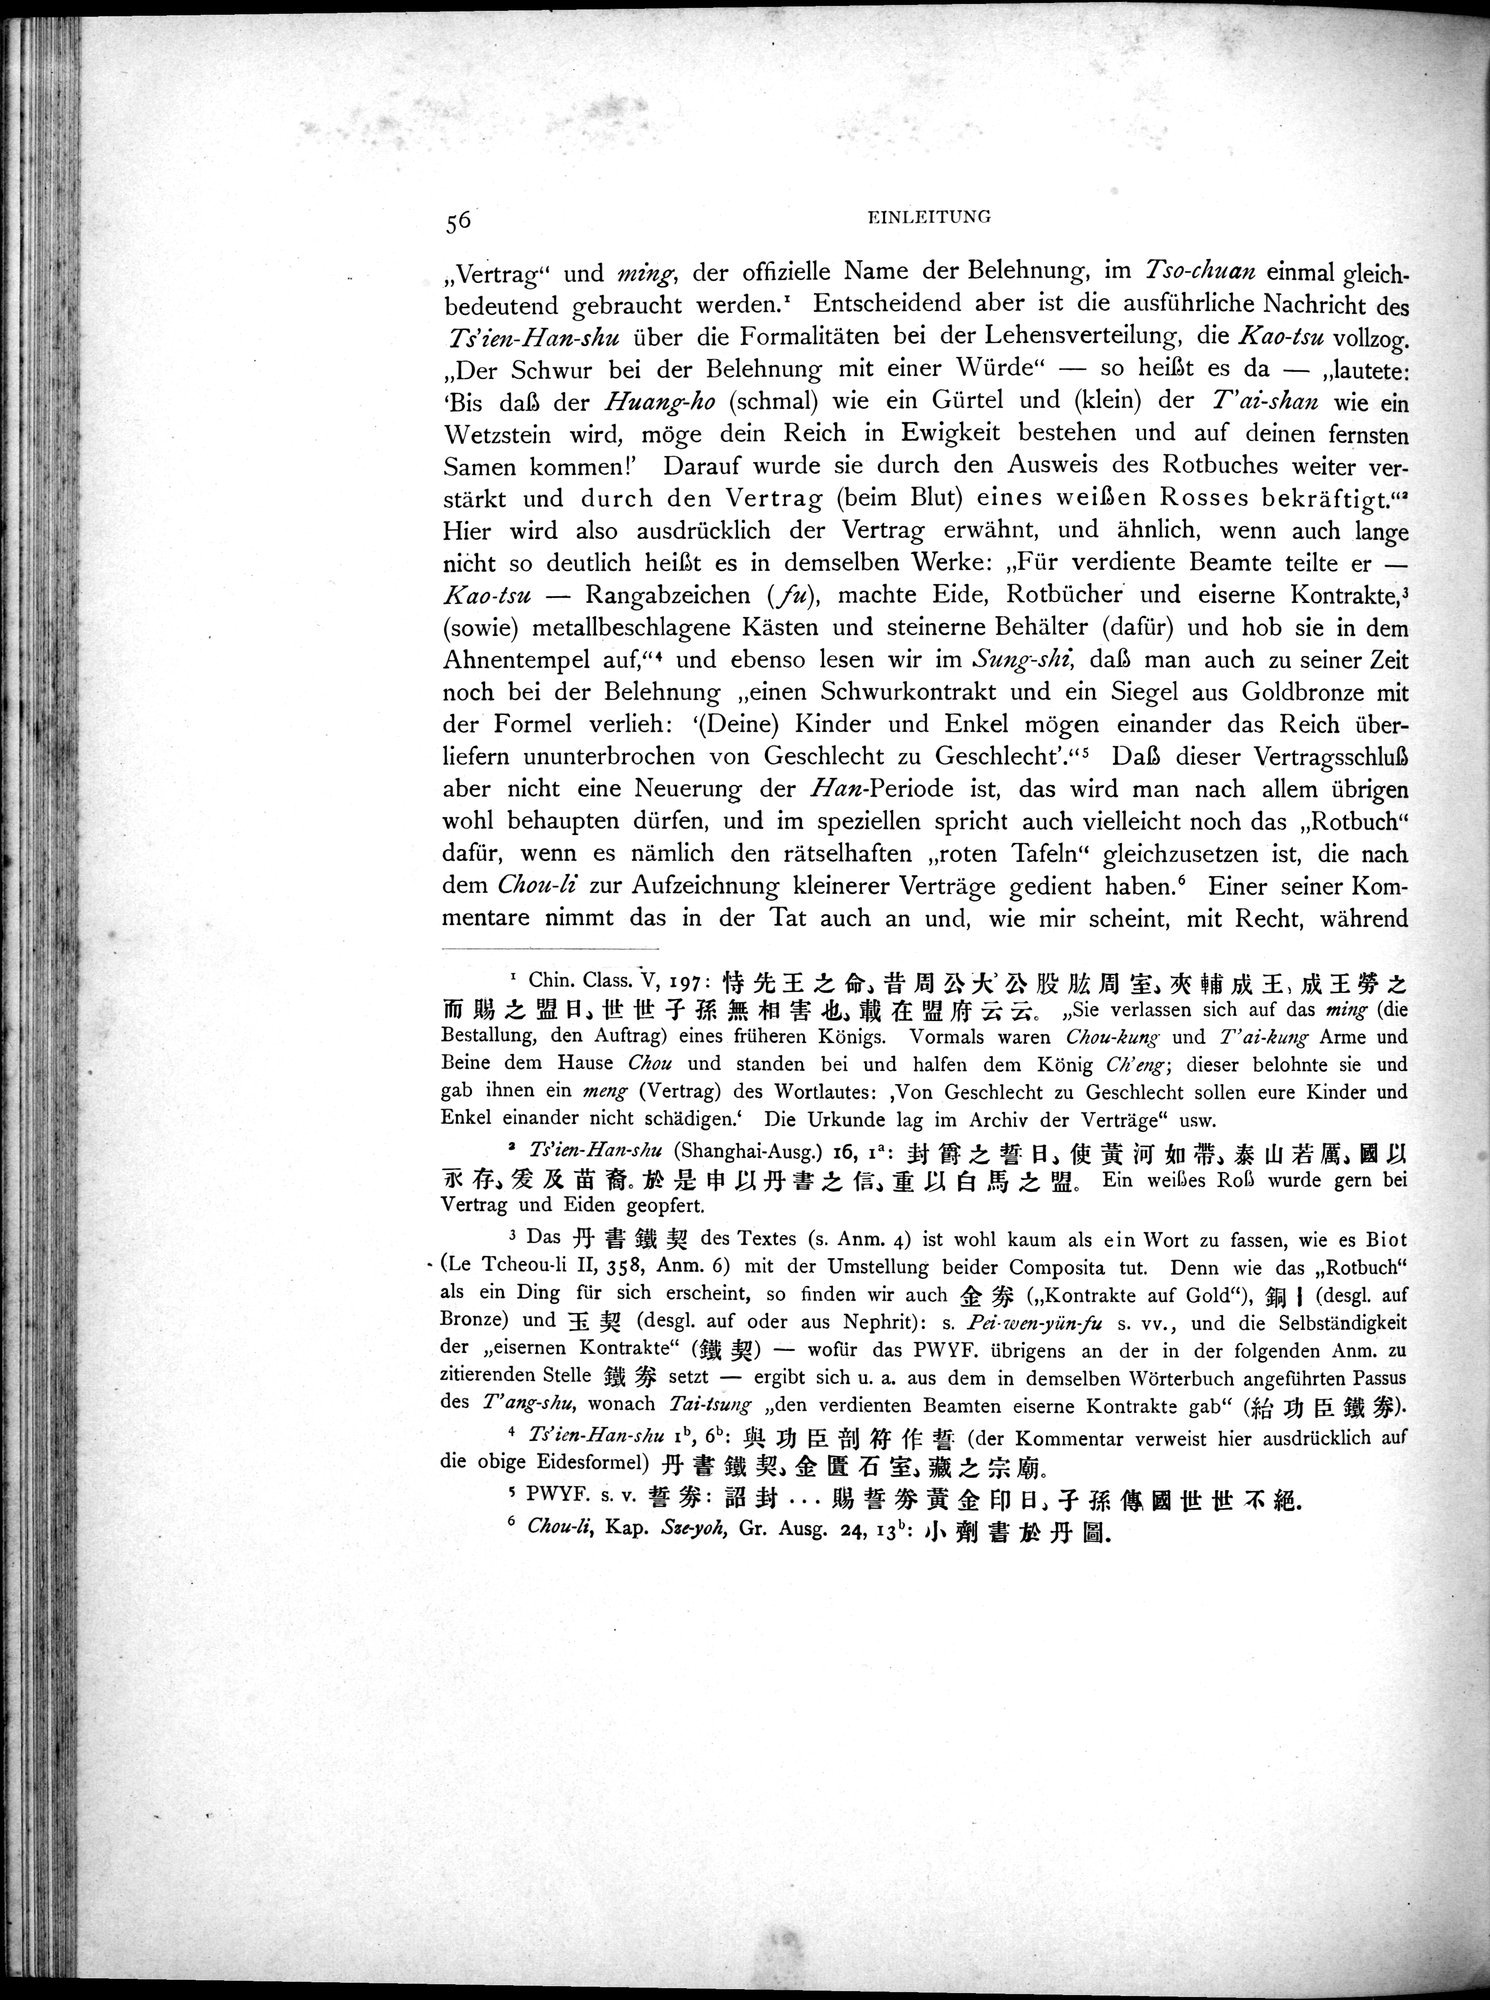 Die Chinesischen Handschriften- und sonstigen Kleinfunde Sven Hedins in Lou-lan : vol.1 / Page 80 (Grayscale High Resolution Image)